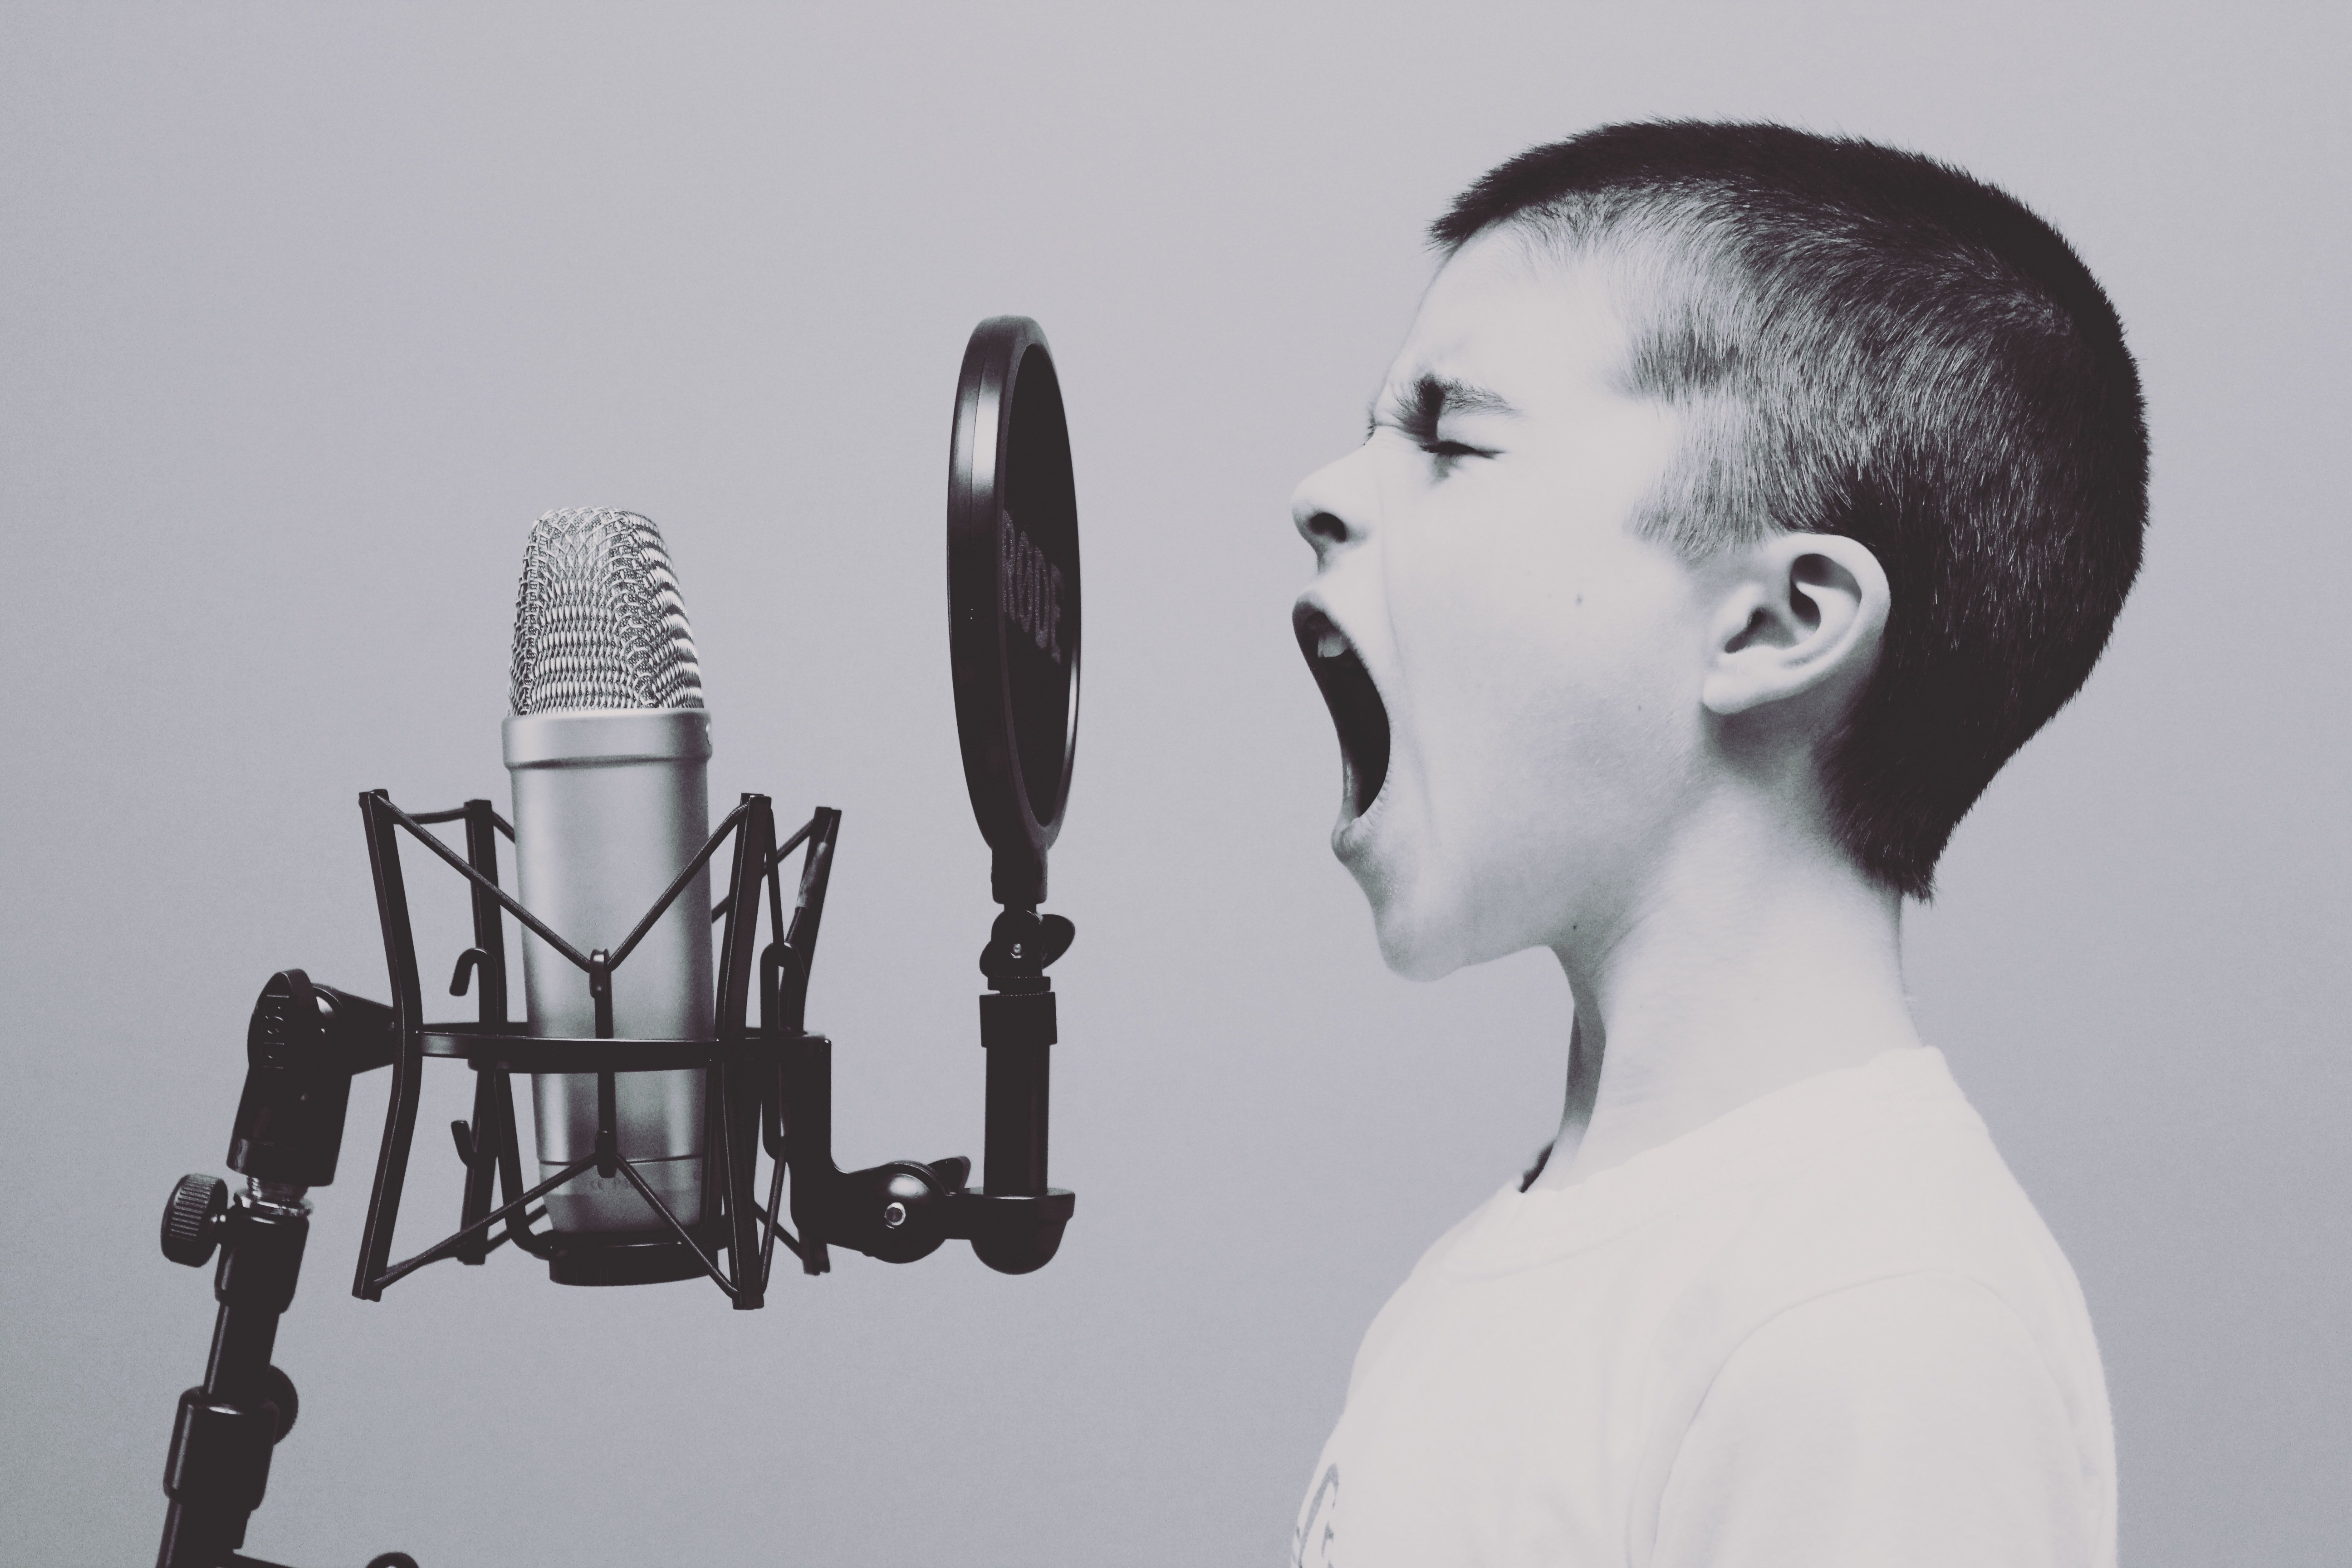 Voice singer. Мальчик с микрофоном. Человек с микрофоном. Ребенок с микрофоном. Поет в микрофон.